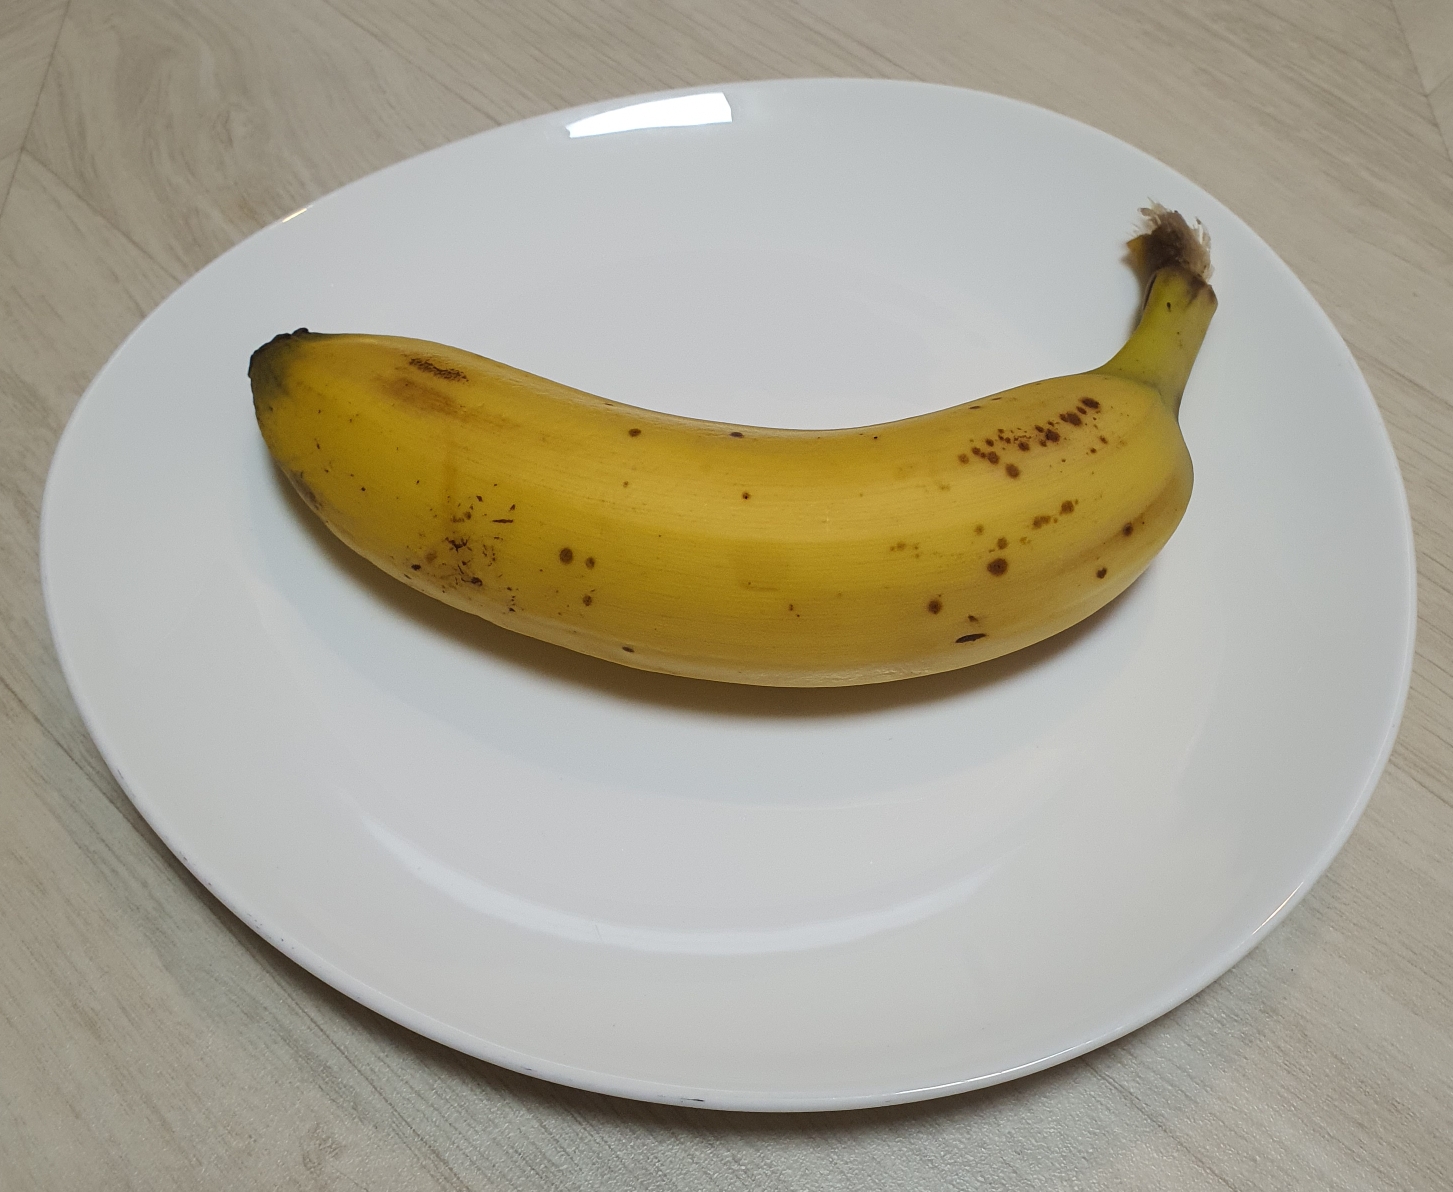 바나나 보관방법